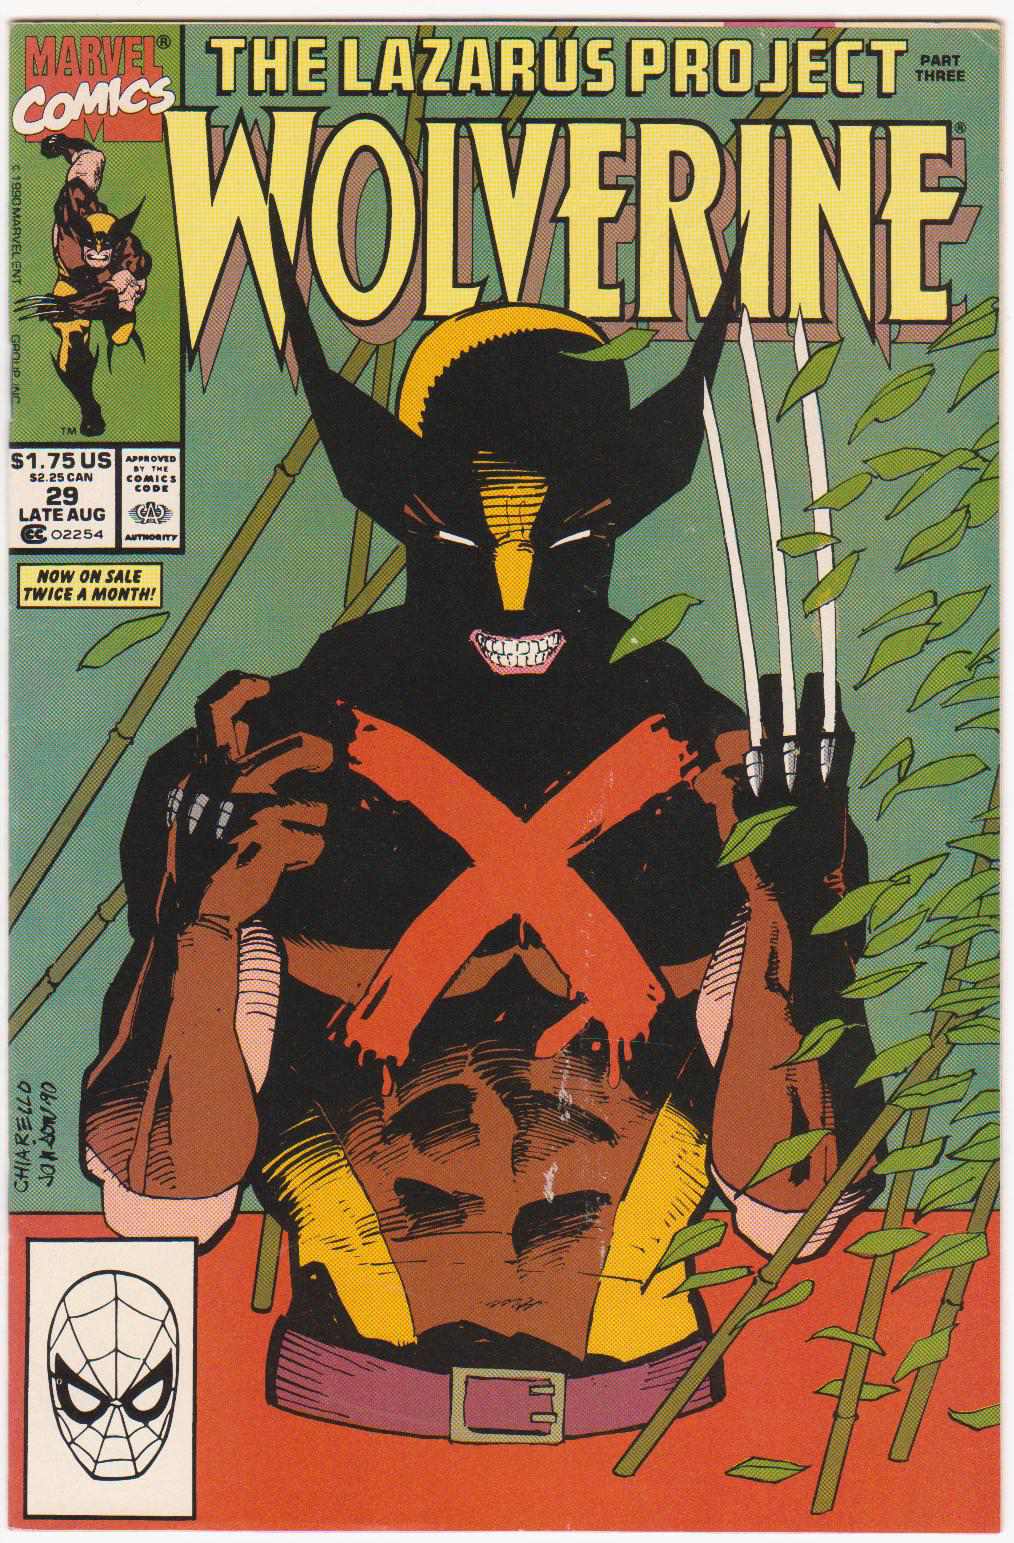 Wolverine #29